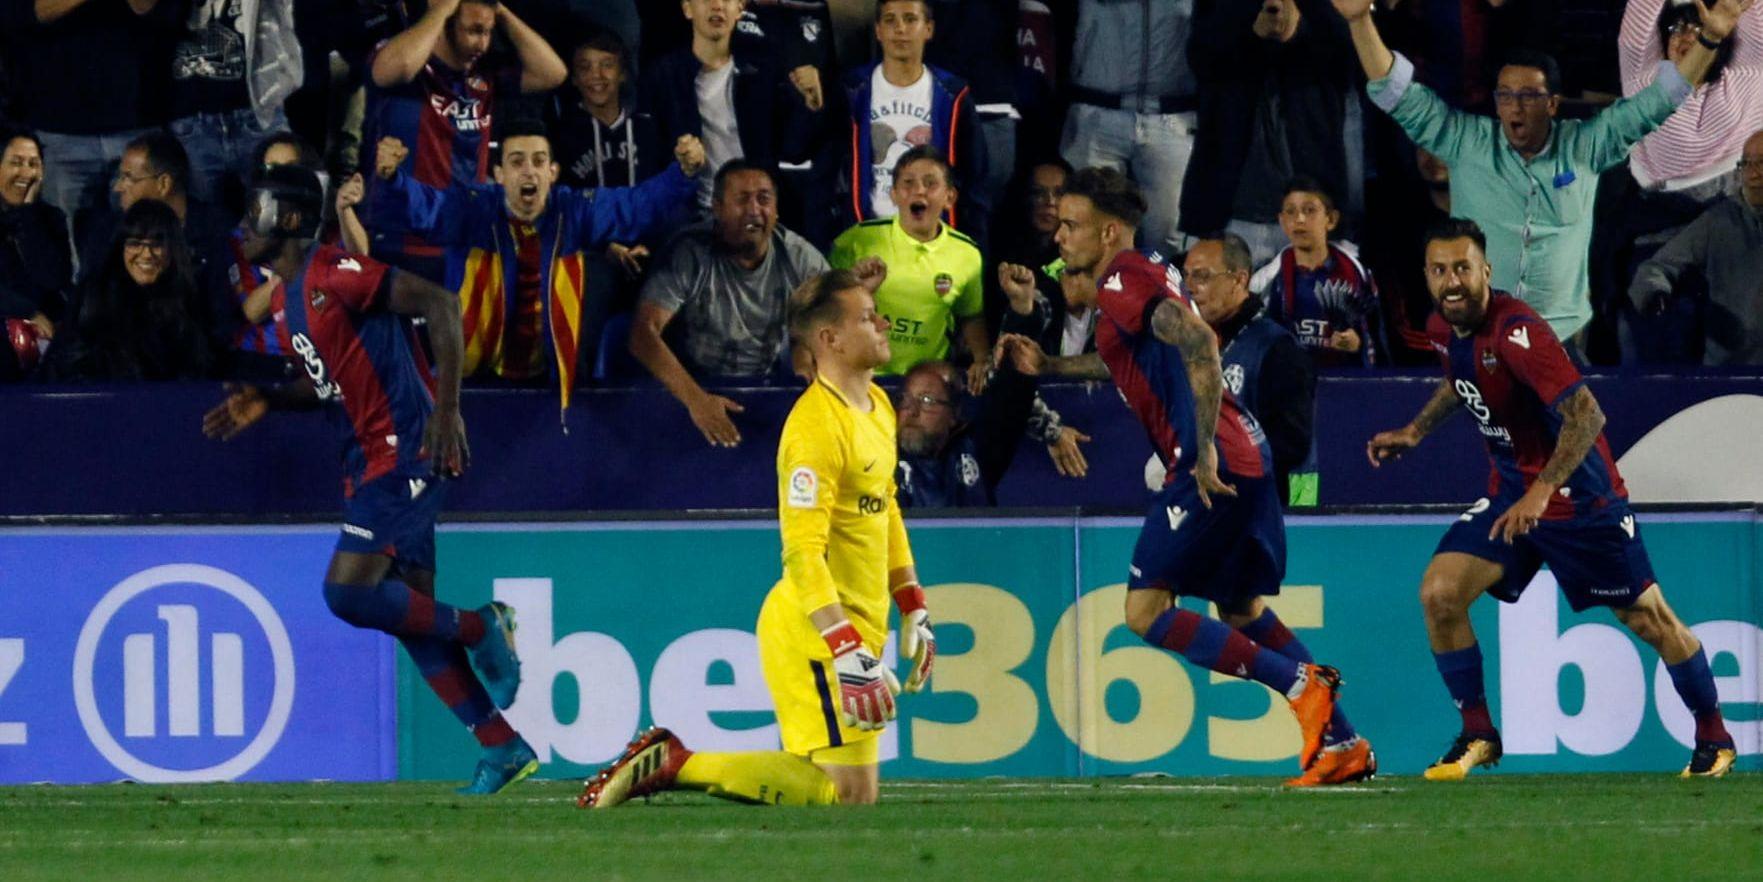 Marc-Andre ter Stegen i Barcelonas mål släppte in fem mål mot Levante. Därmed är Barcelonas obesegrade ligasvit bruten.